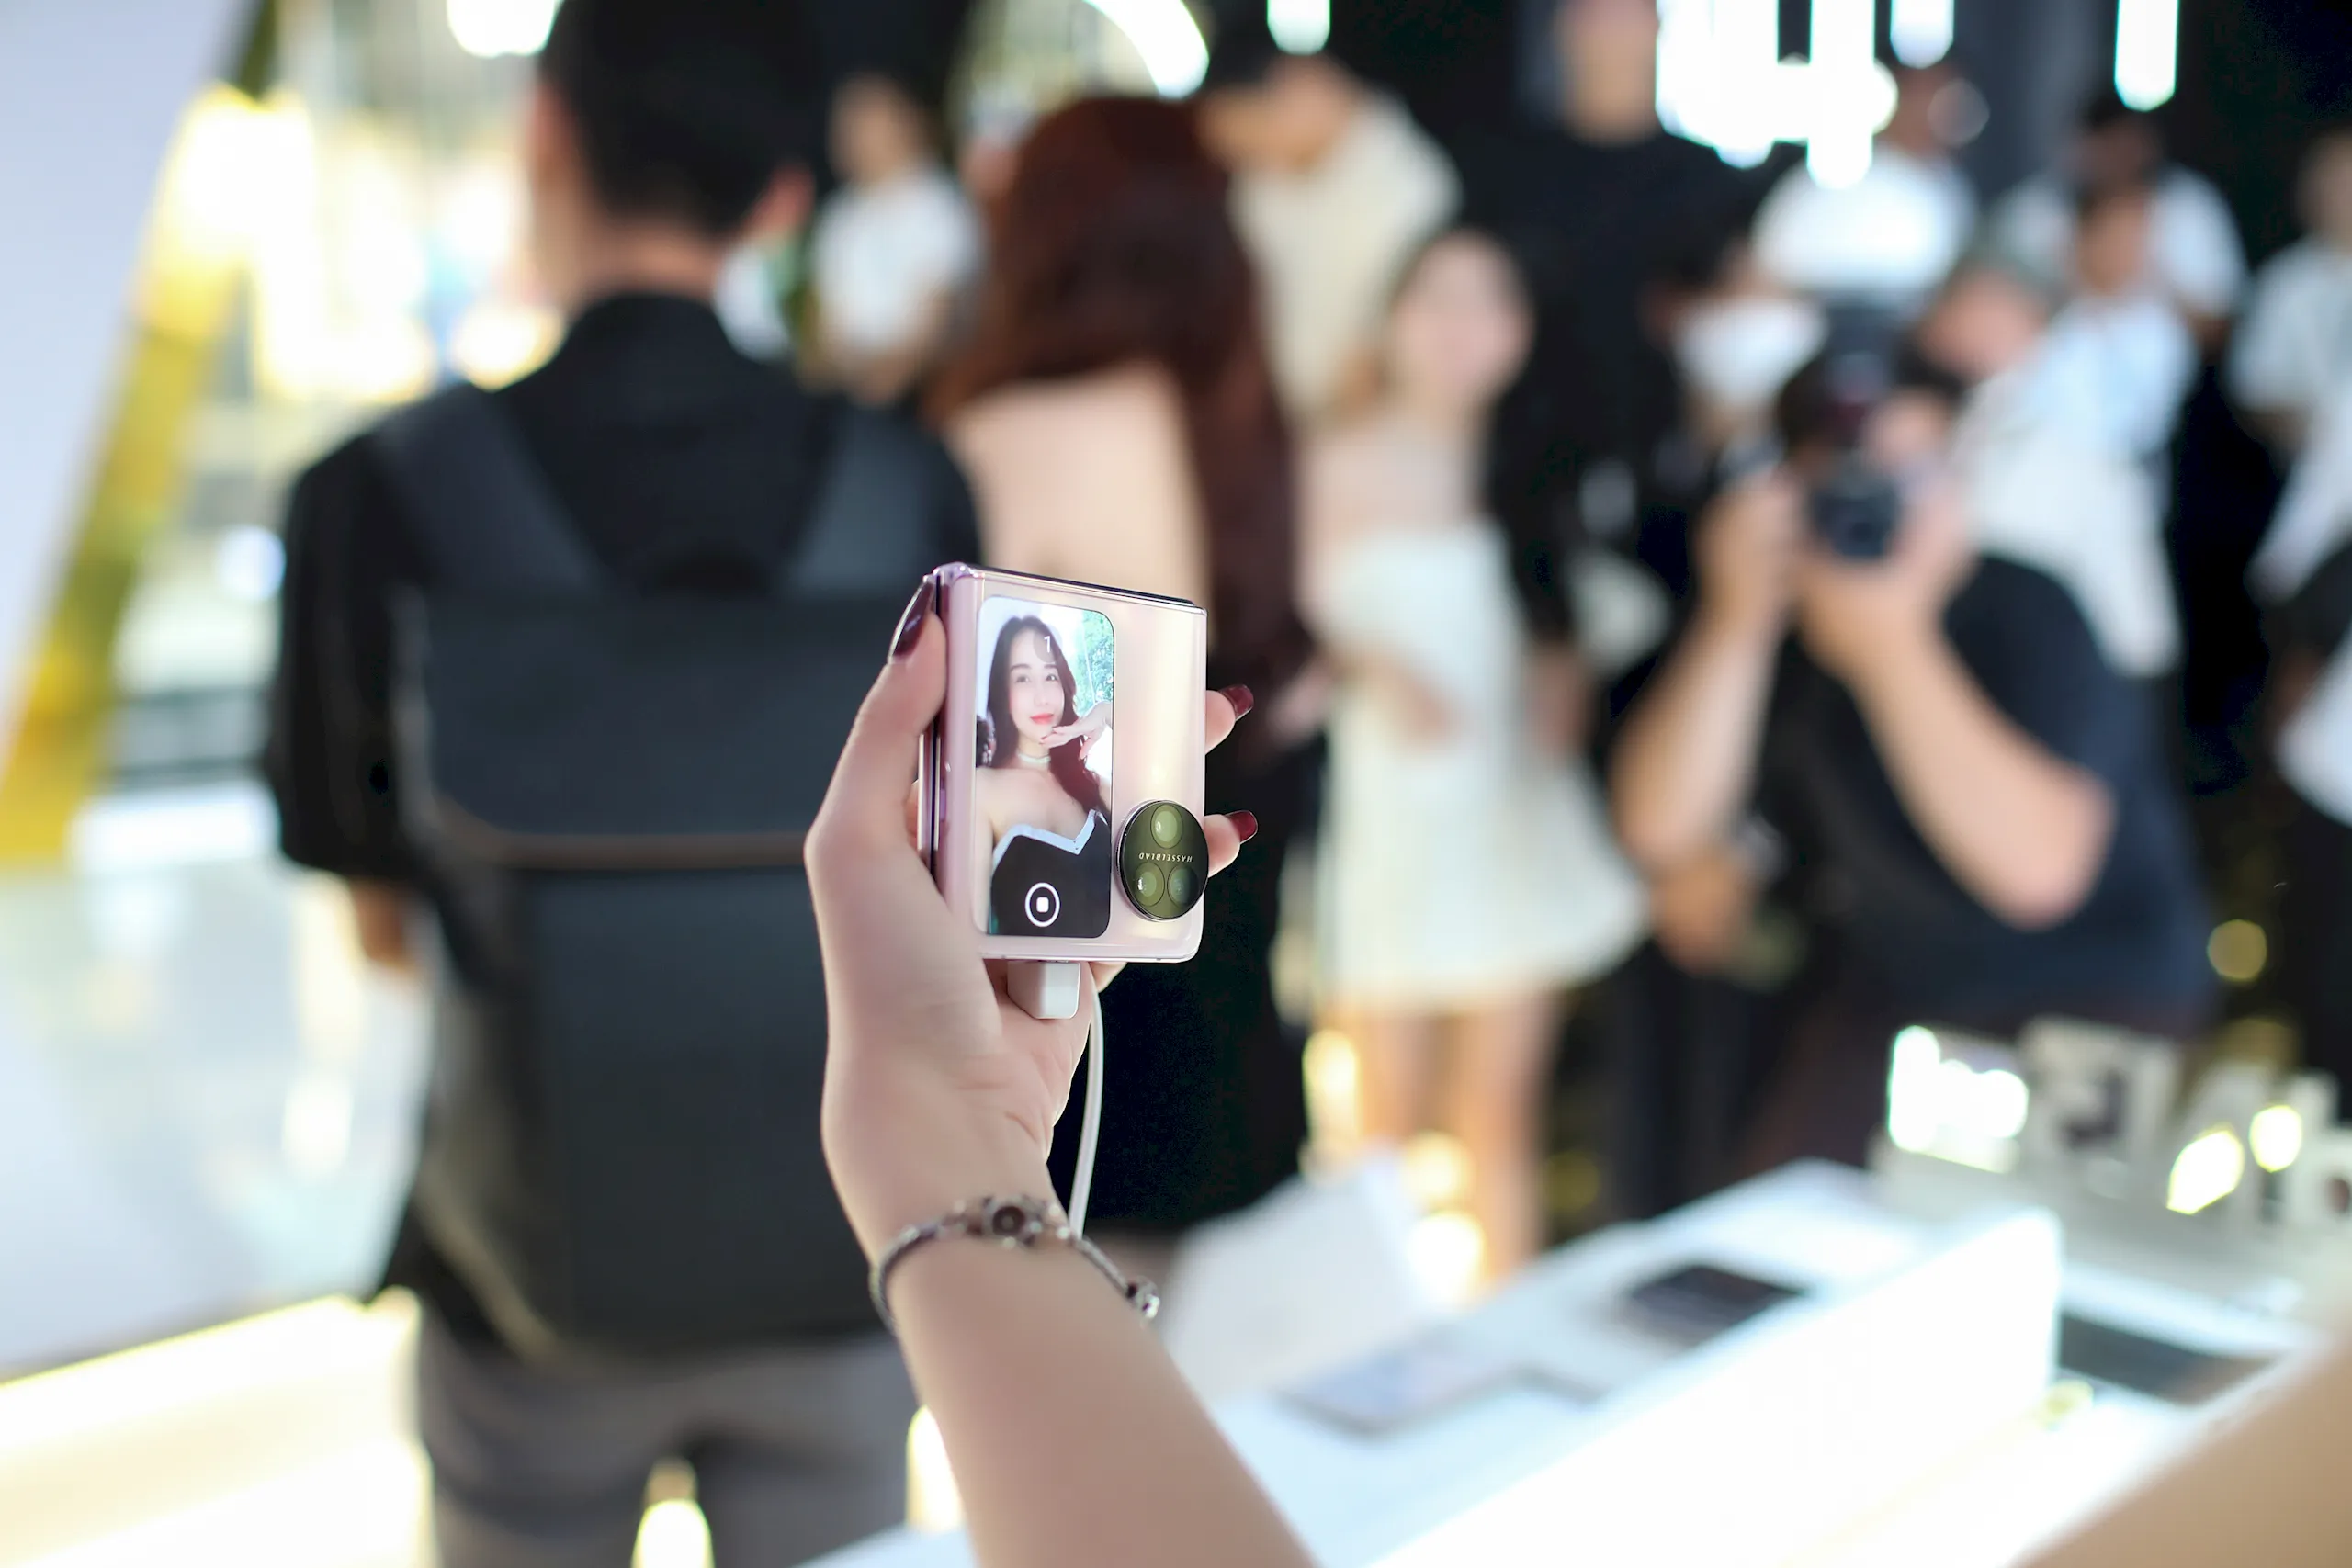 Bộ đôi smartphone gập OPPO Find N3 Series chính thức mở bán tại Việt Nam